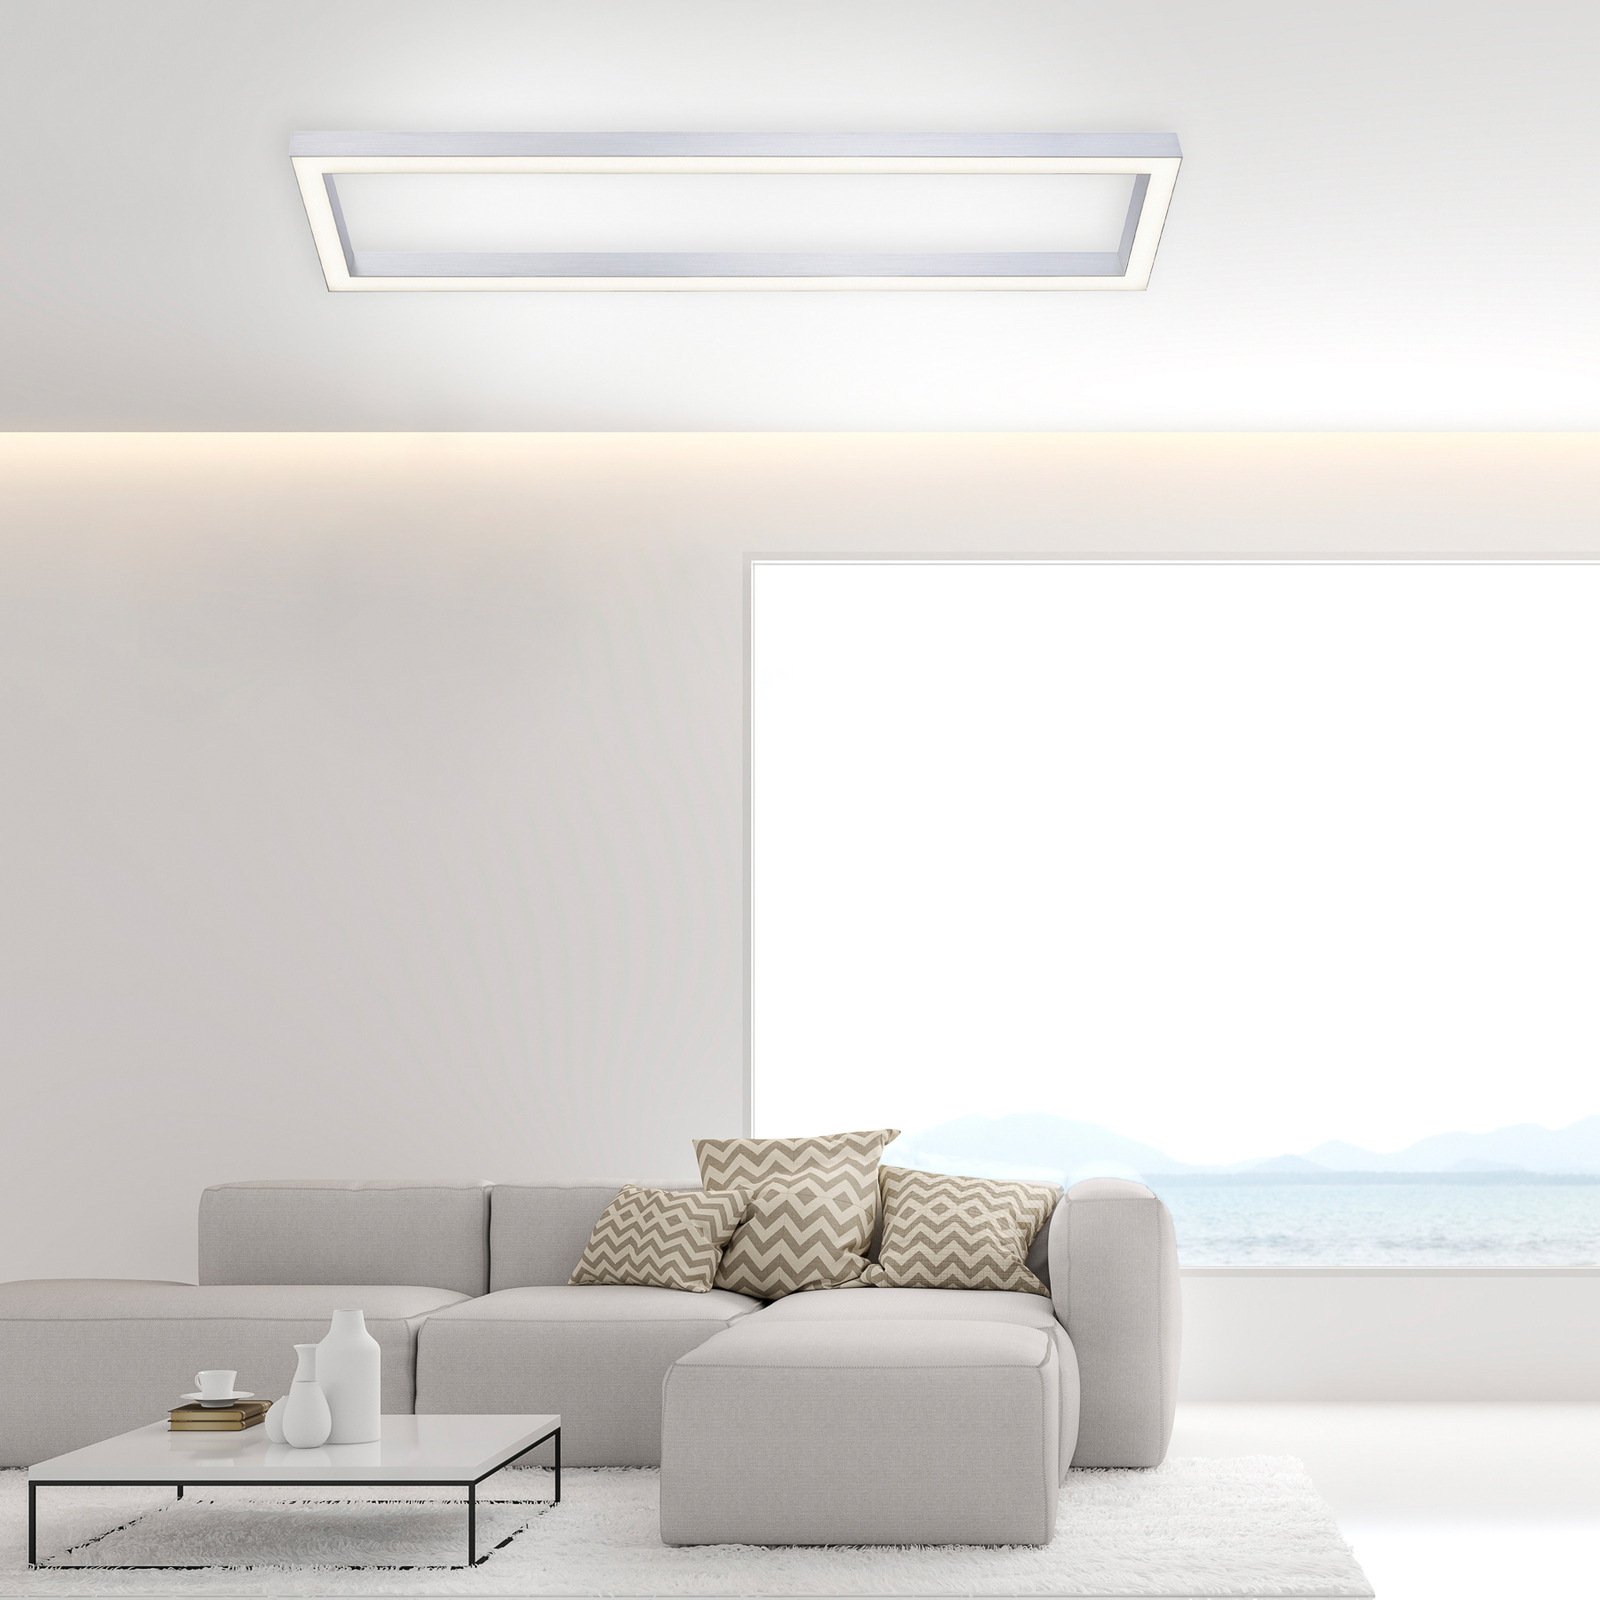 Pure Lines LED plafondlamp, hoekig, aluminium